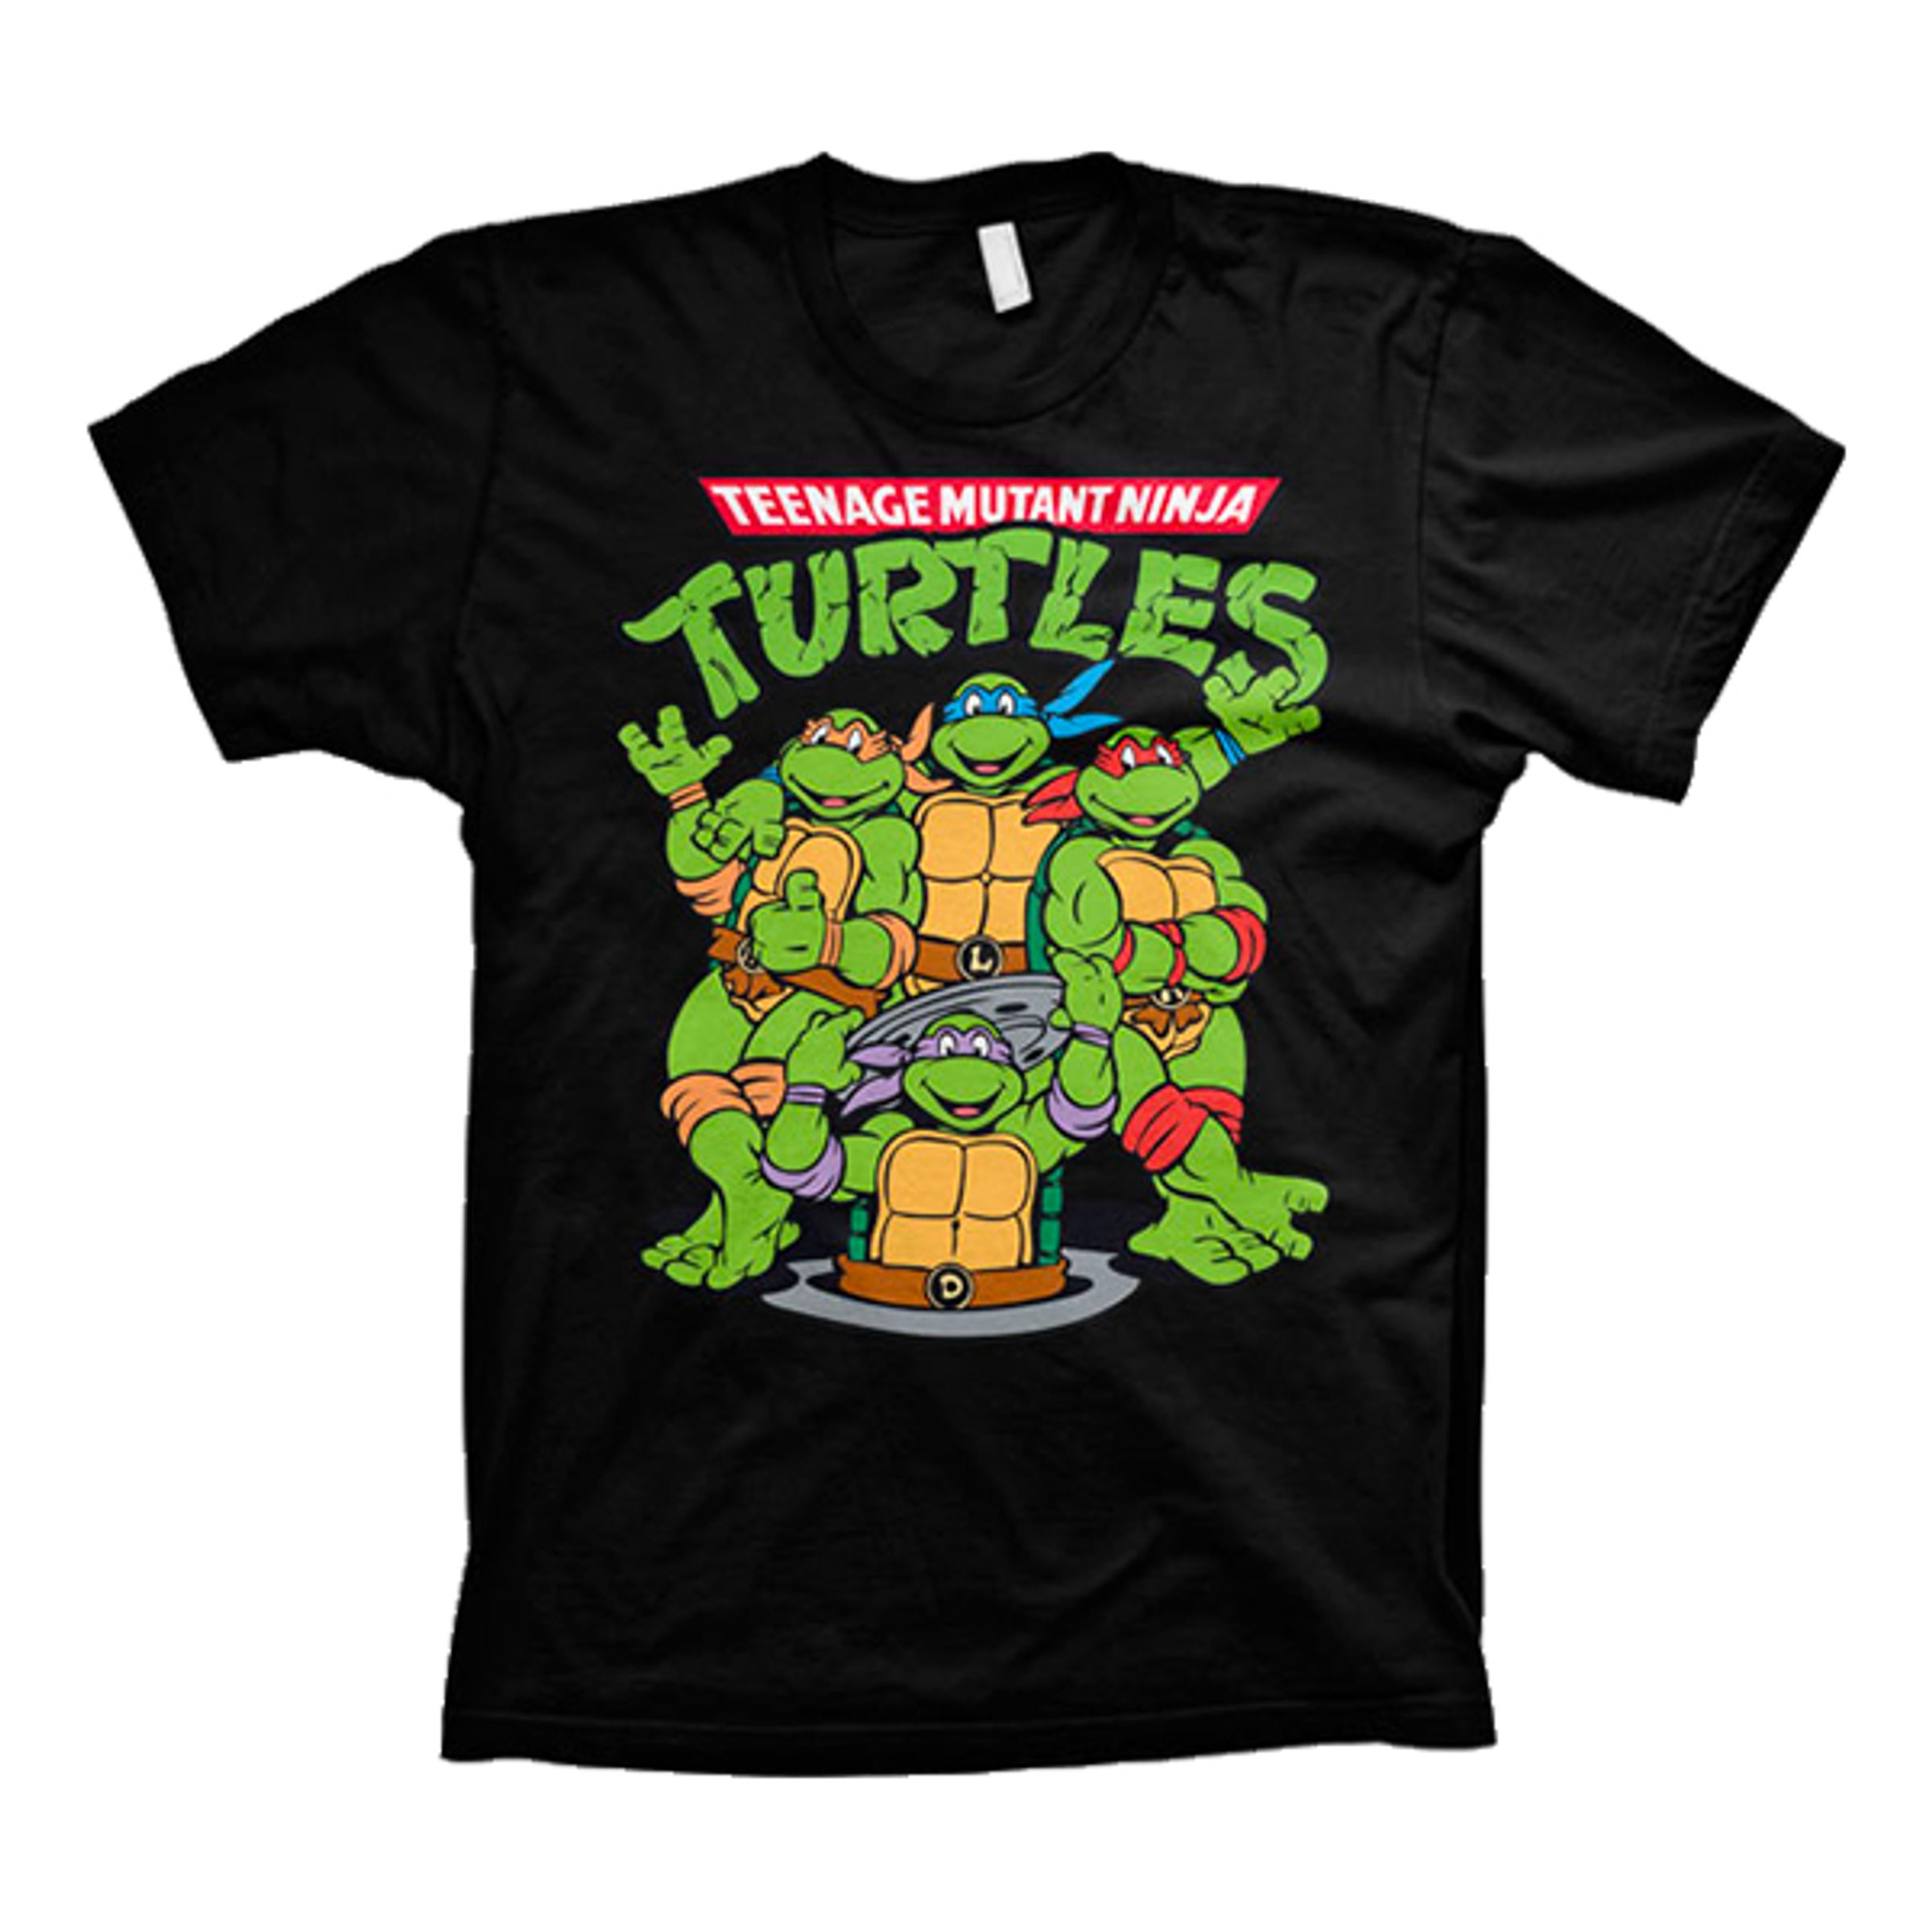 Teenage Mutant Ninja Turtles T-shirt - Small